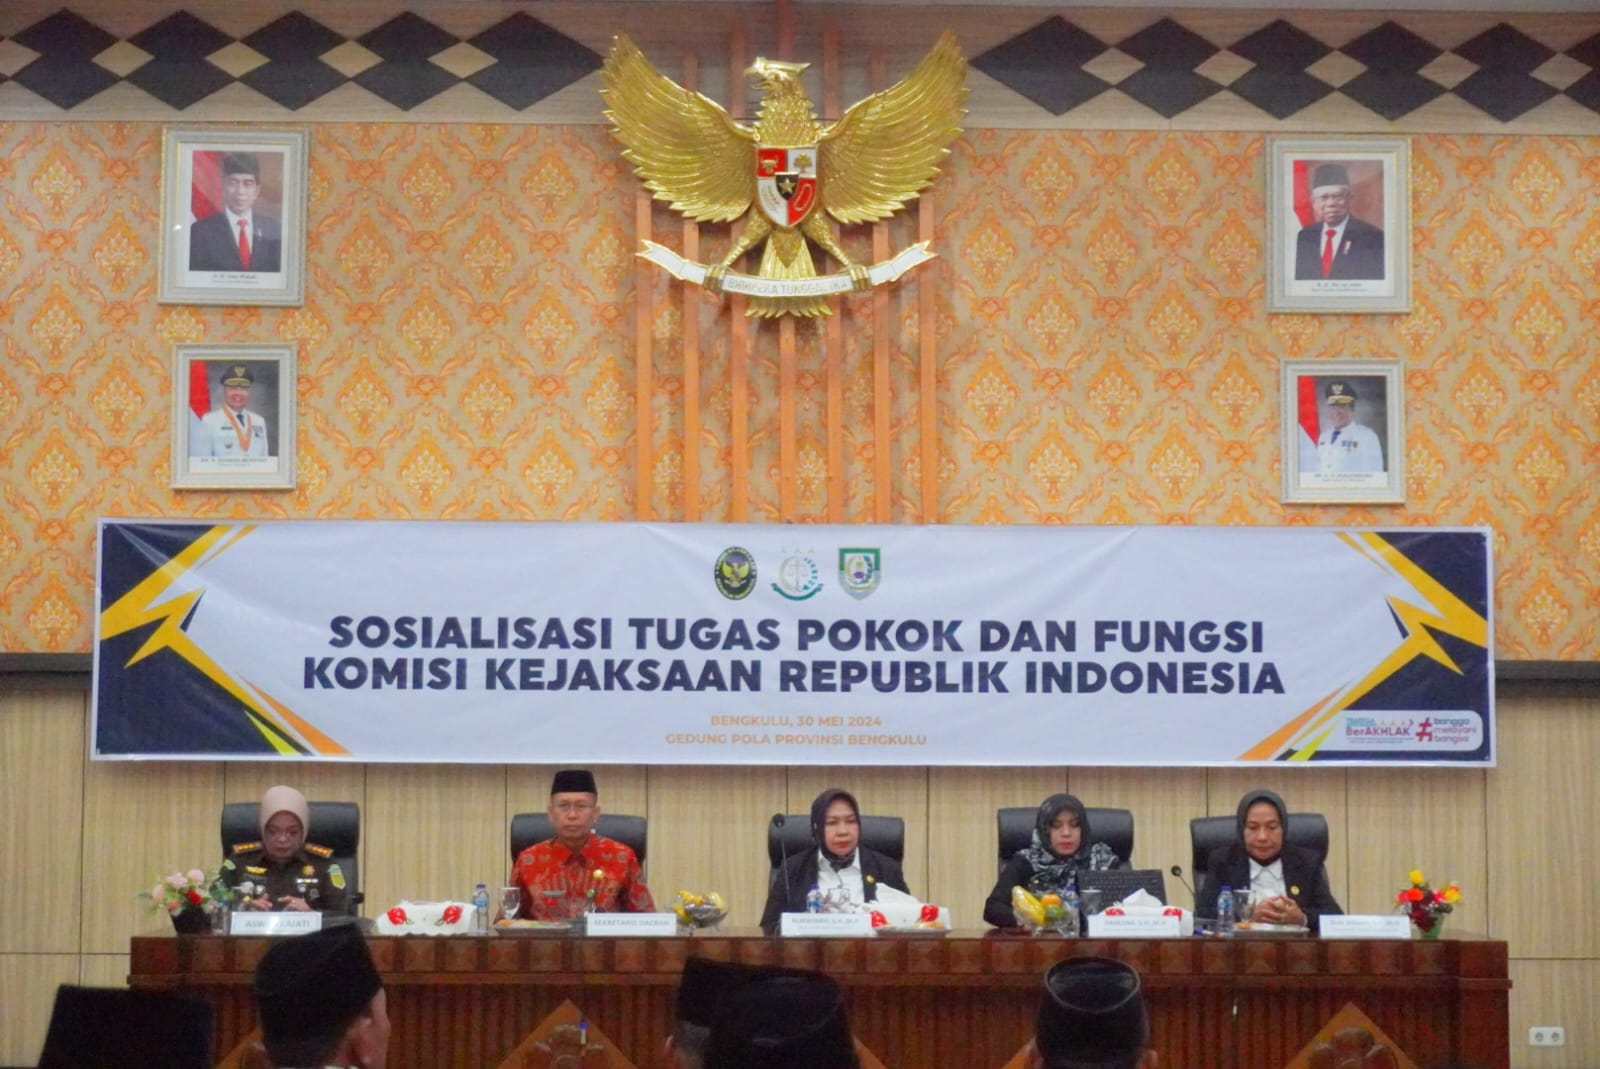 Kunjungan Kerja ke Bengkulu, Komisi Kejaksaan Republik Indonesia Gelar Sosialisasi Tugas dan Fungsi